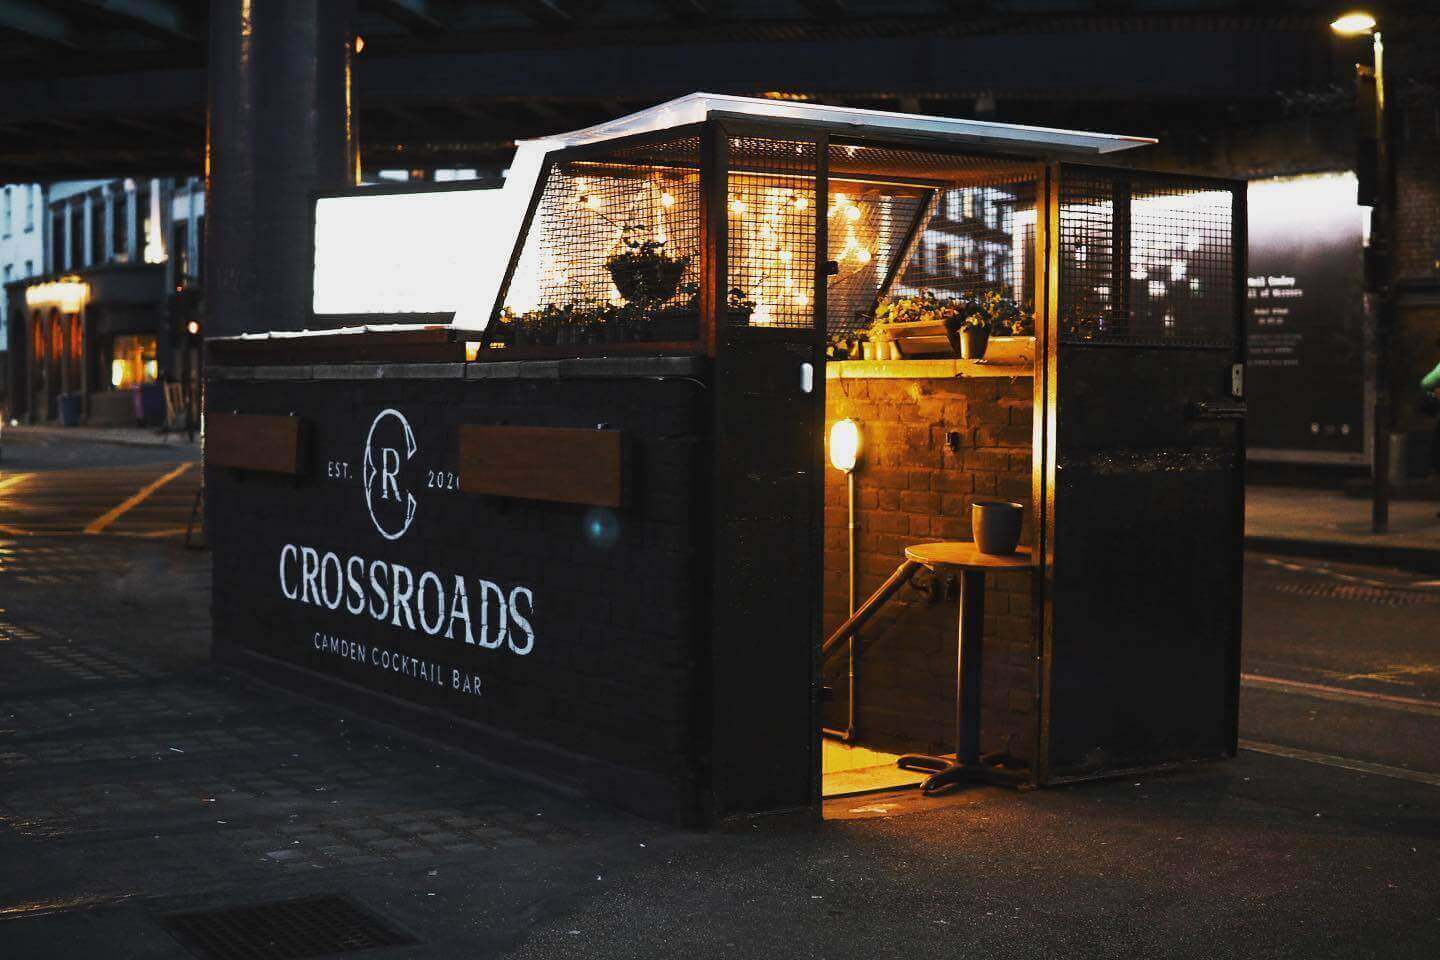 Crossroads in London UK